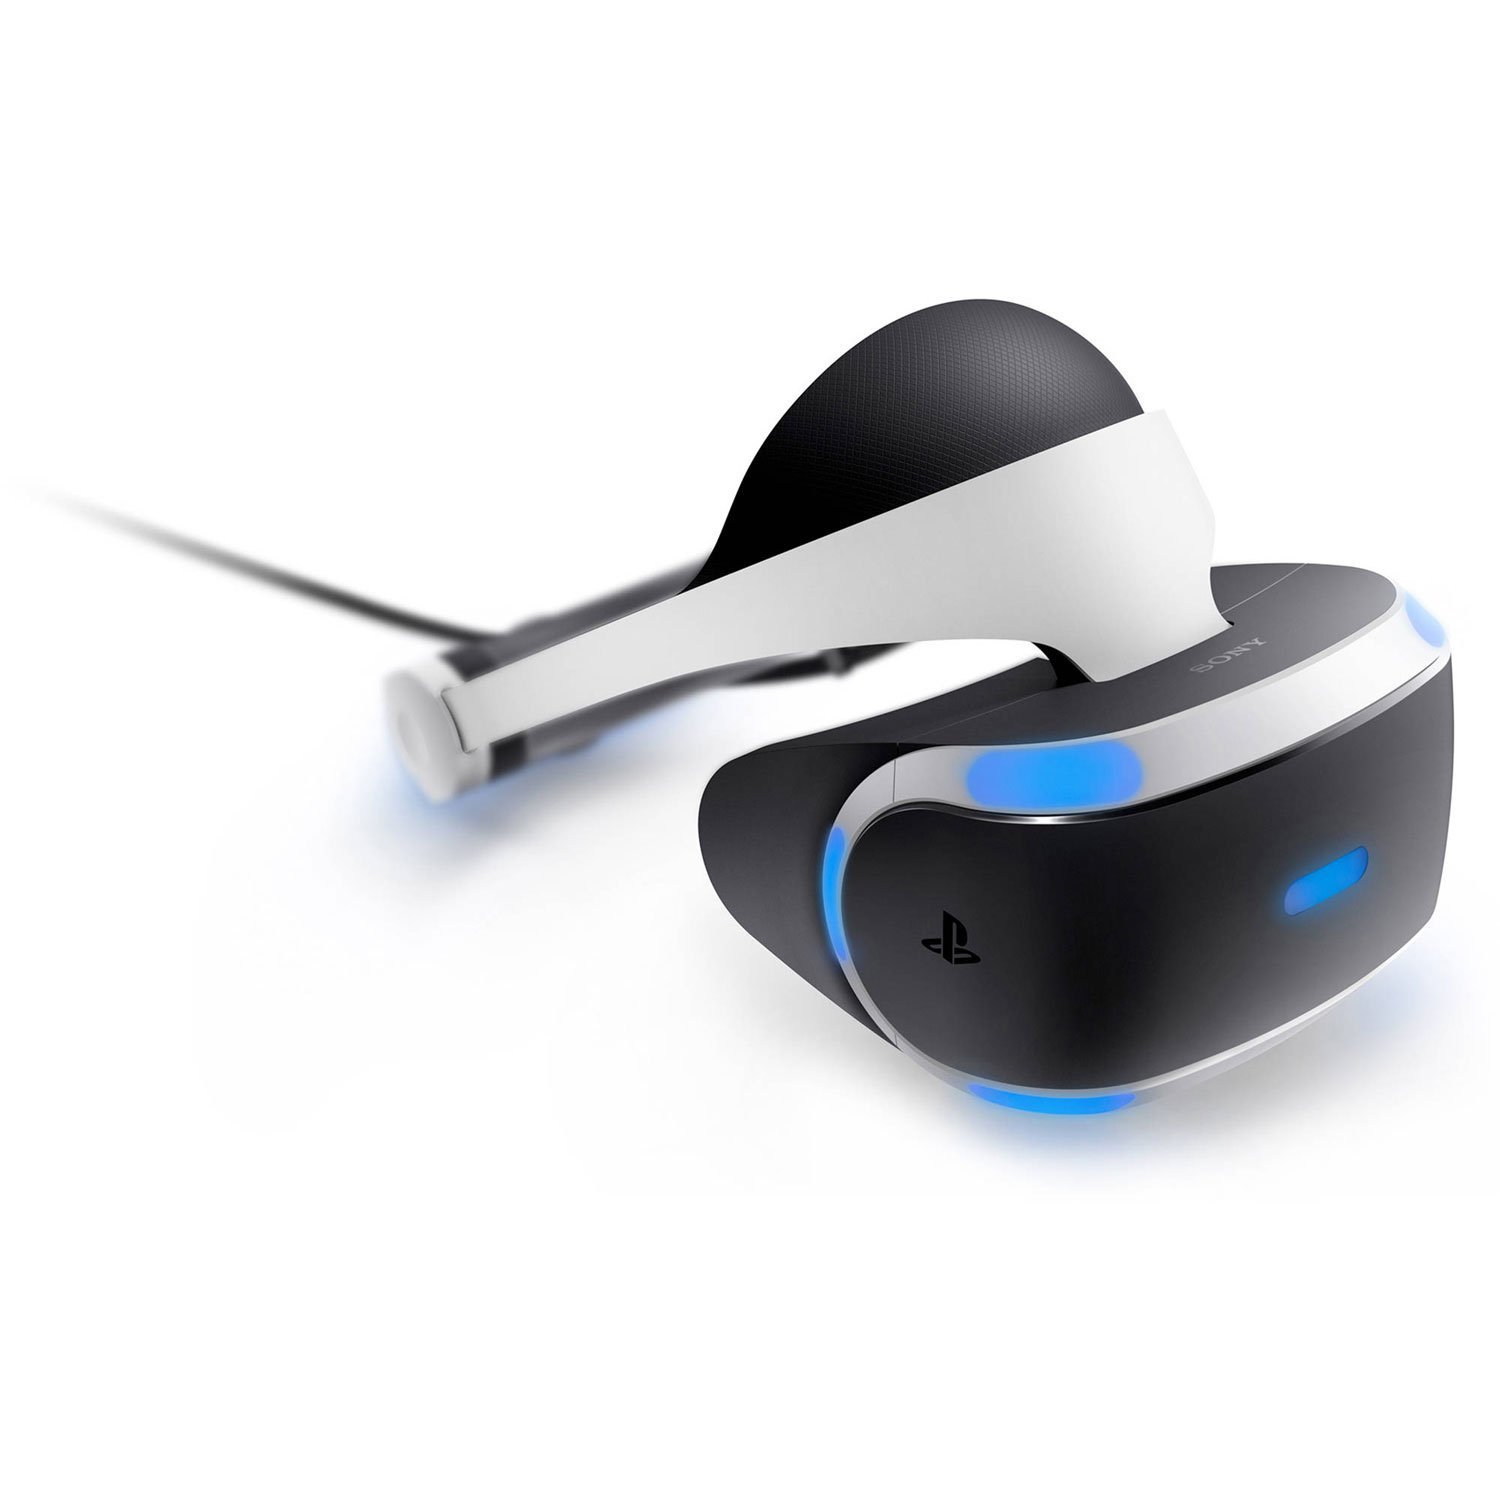 Best VR Headset Under 100